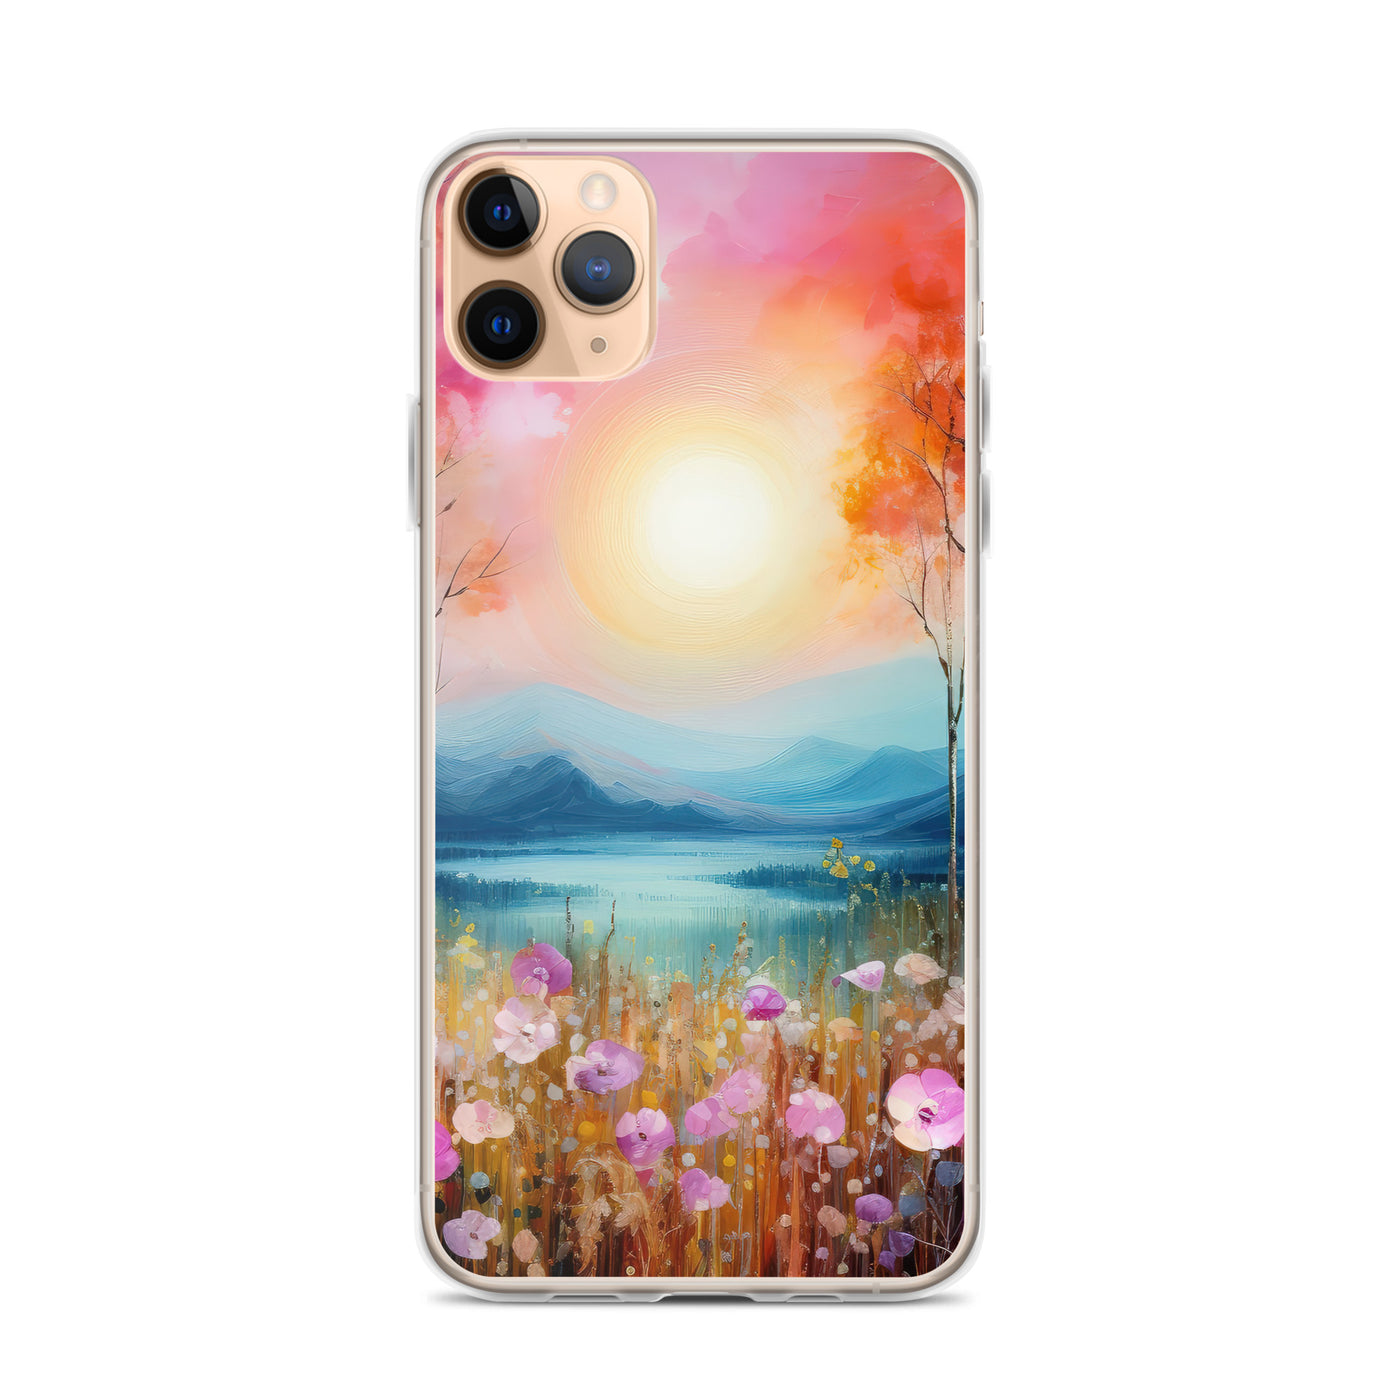 Berge, See, pinke Bäume und Blumen - Malerei - iPhone Schutzhülle (durchsichtig) berge xxx iPhone 11 Pro Max